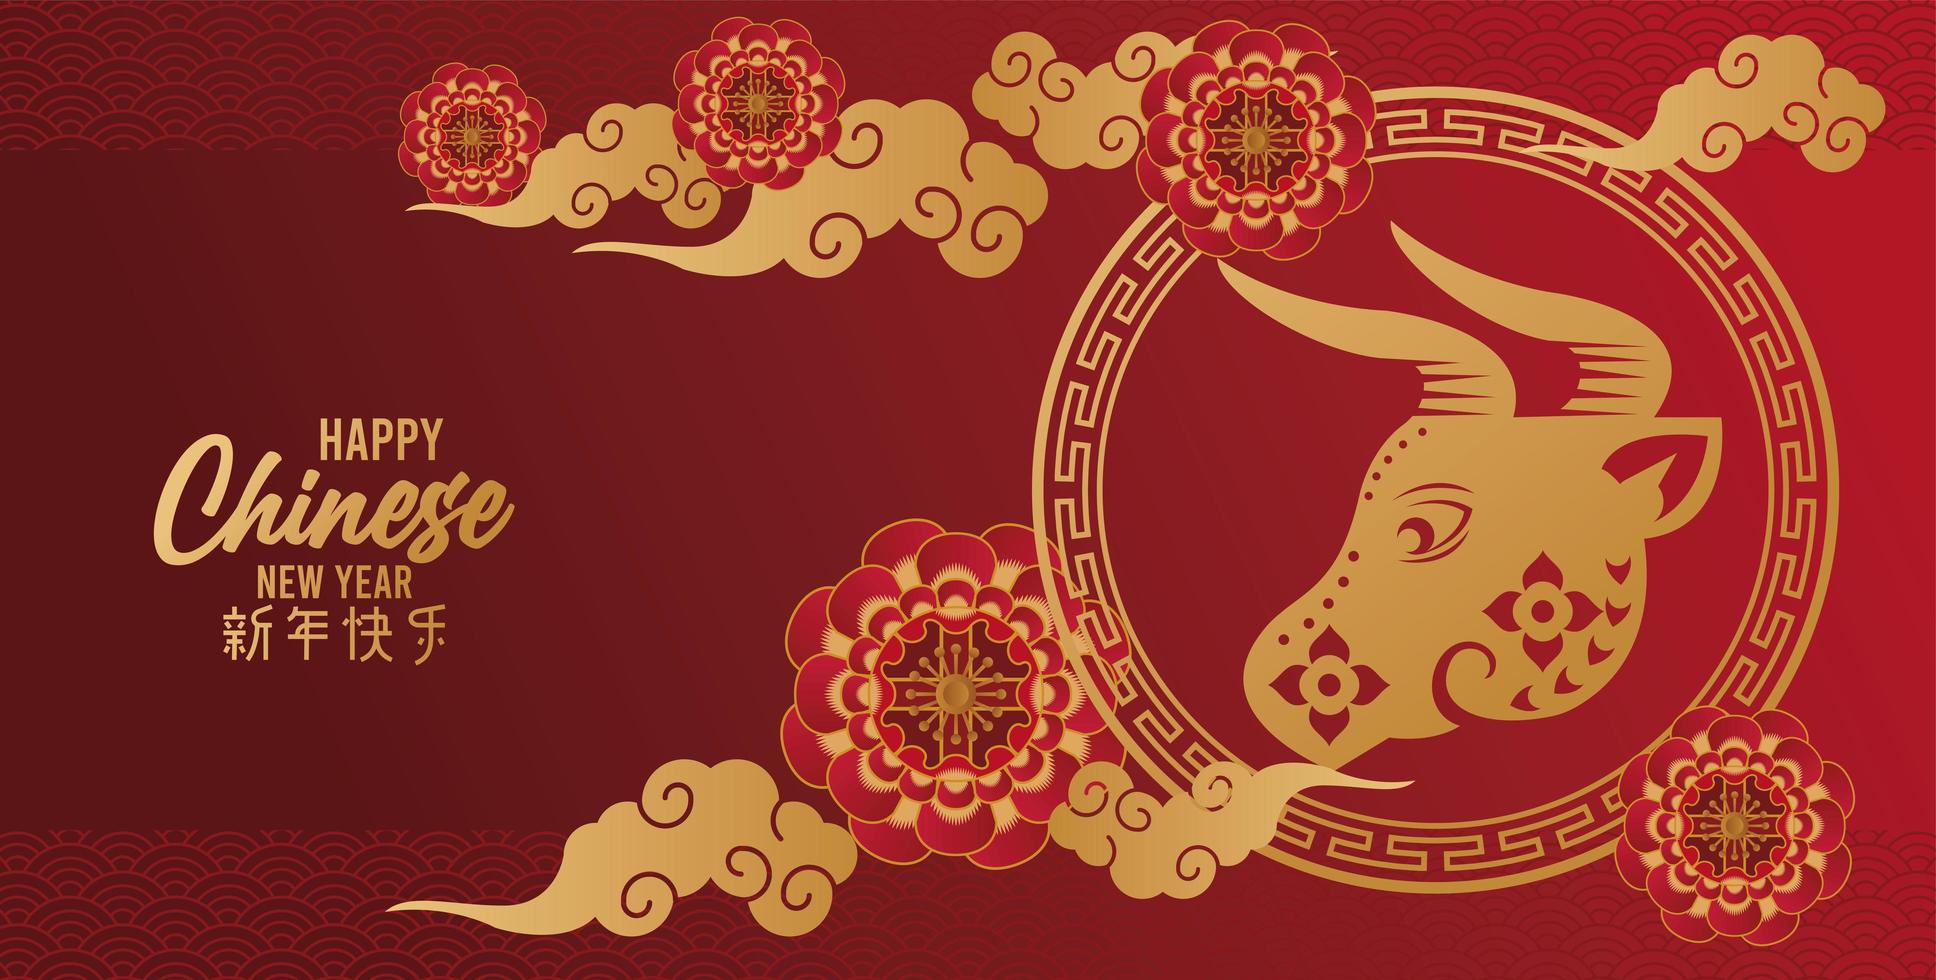 cartão de feliz ano novo chinês com boi dourado e nuvens em fundo vermelho vetor